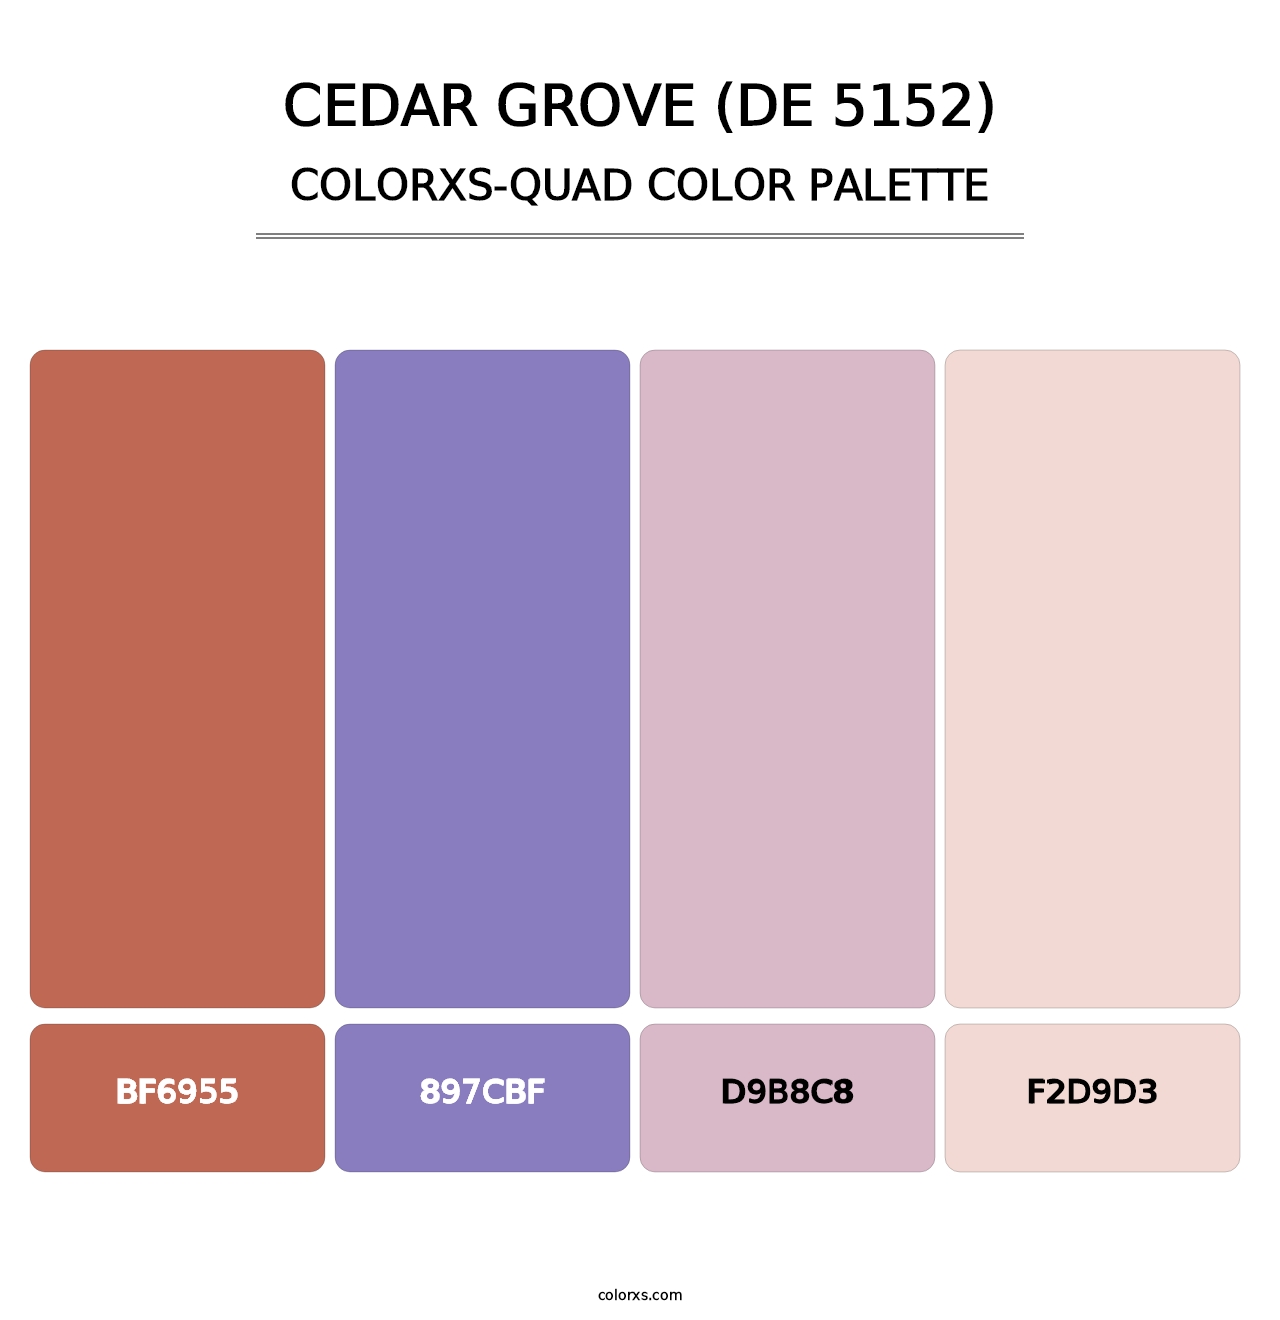 Cedar Grove (DE 5152) - Colorxs Quad Palette